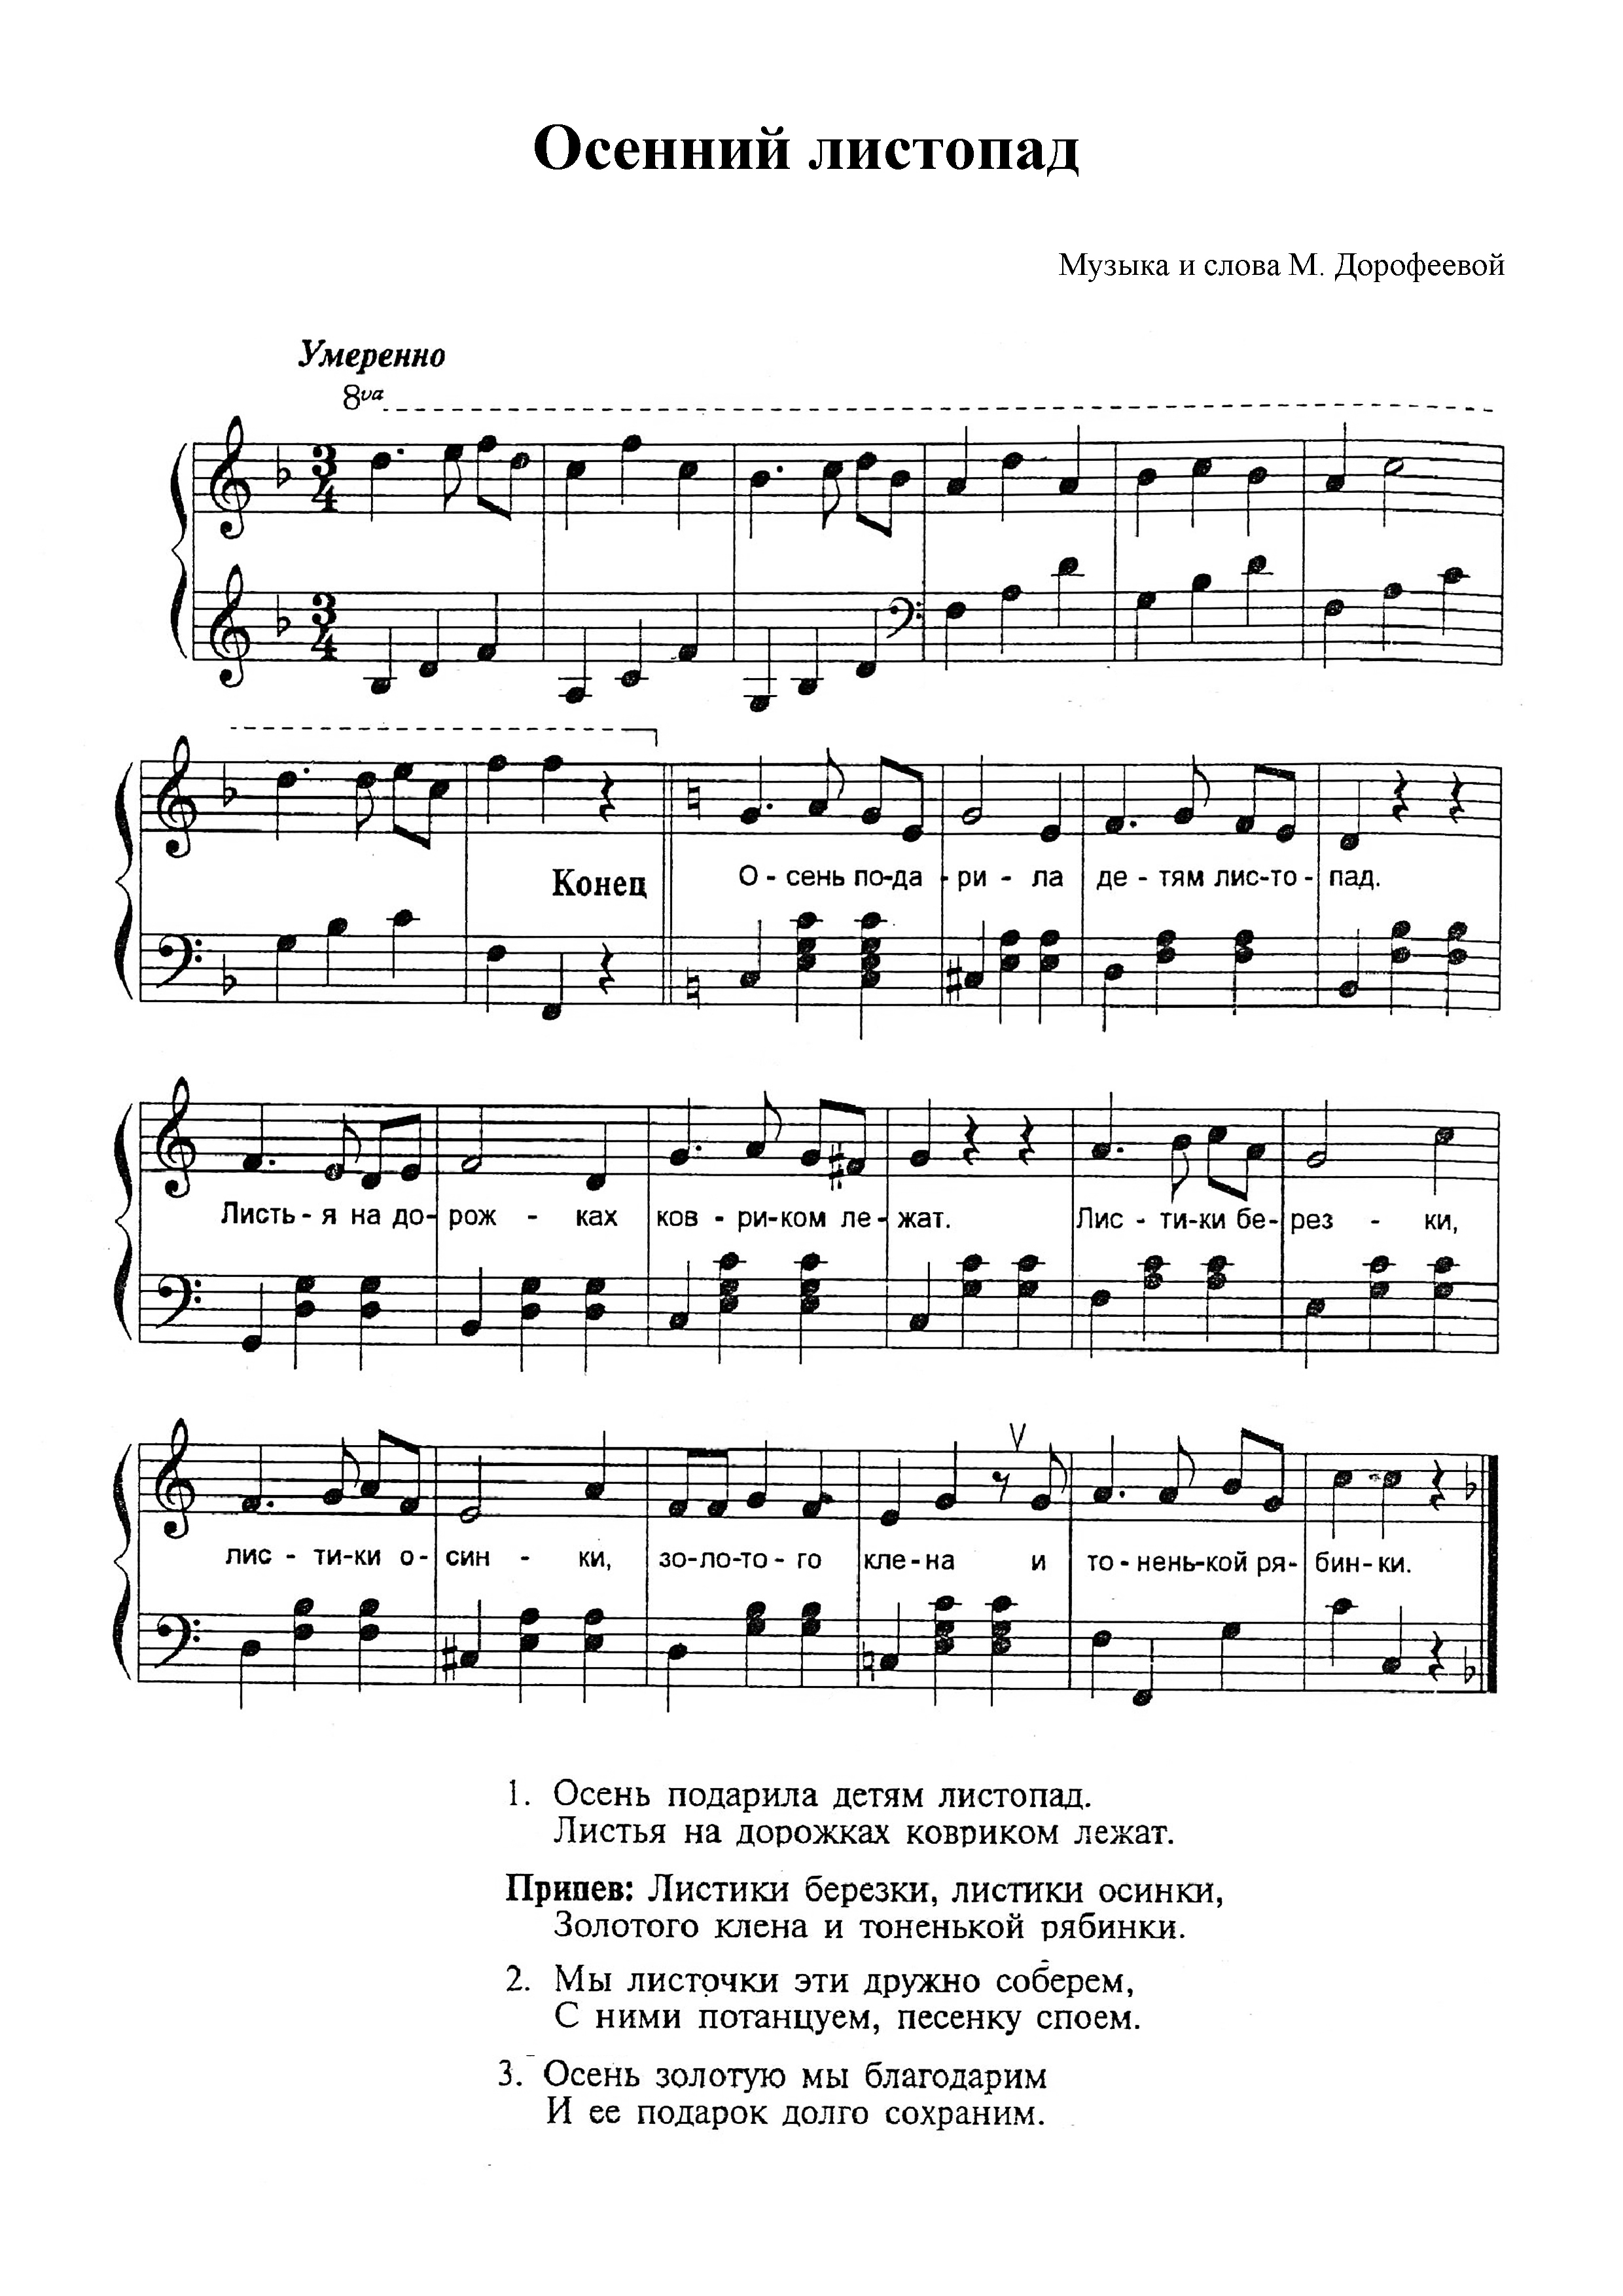 Песня "Осенний Листопад" М. Дорофеевой